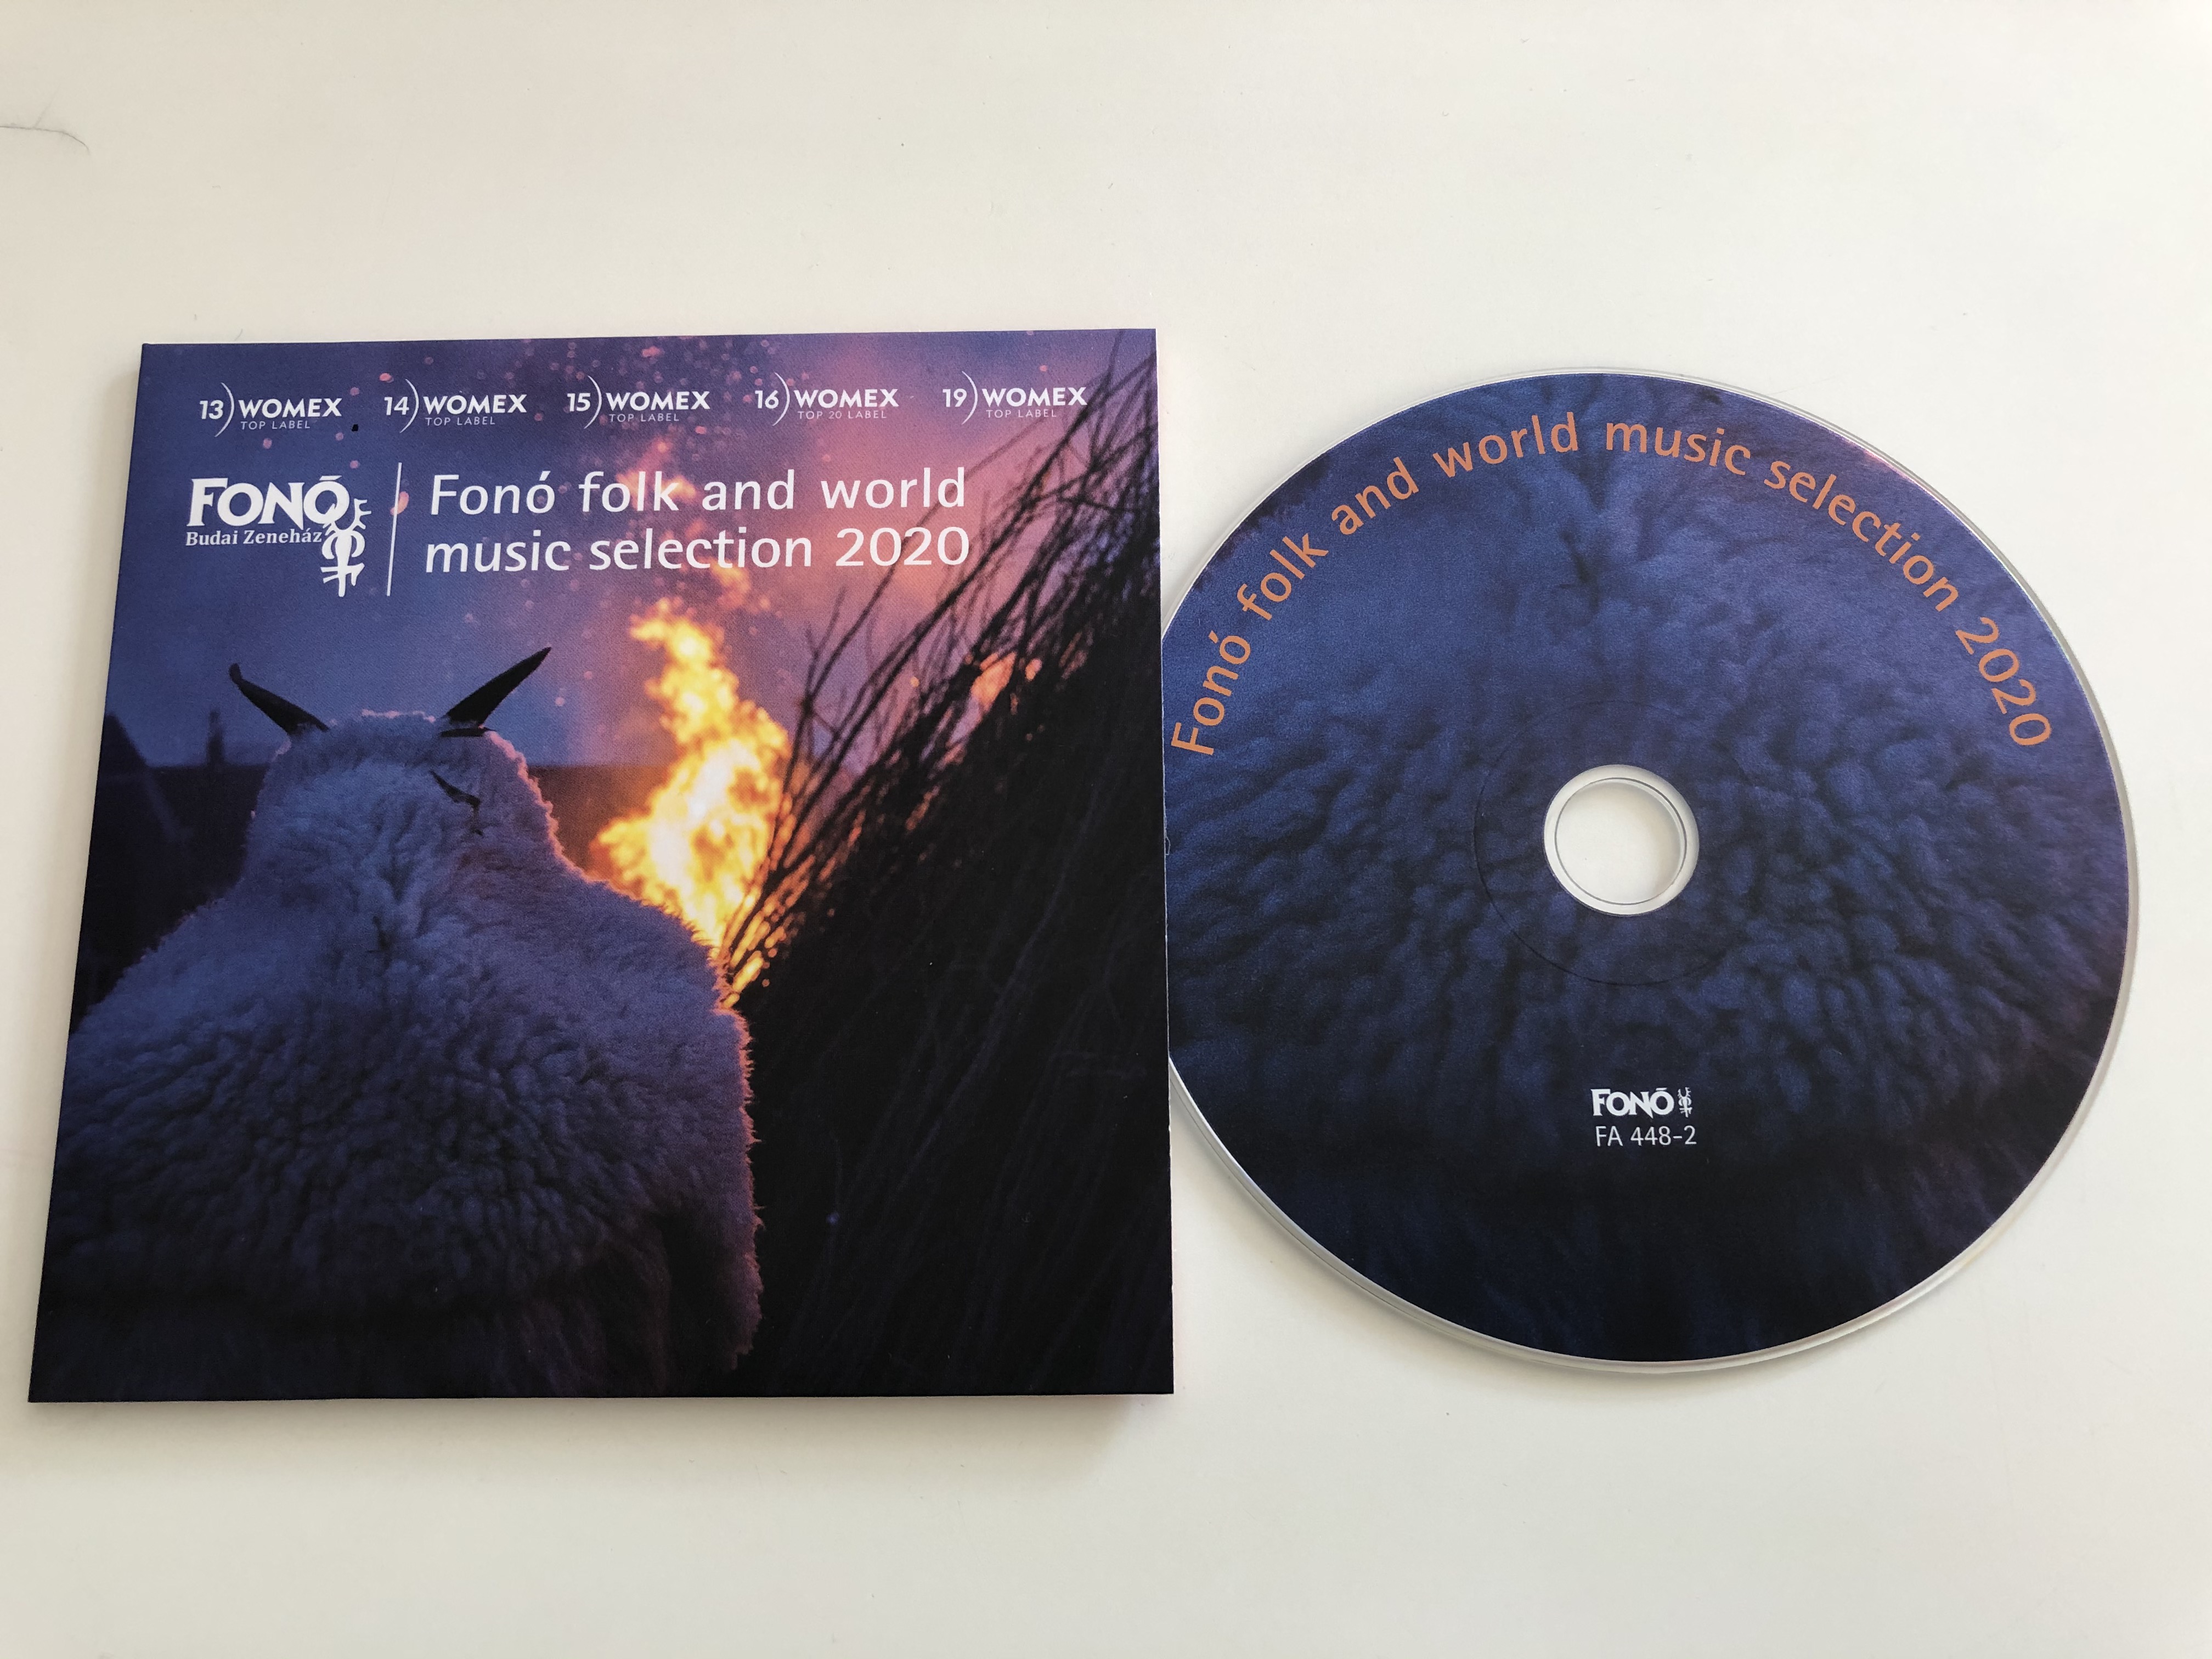 fon-folk-and-world-music-selection-2020-fon-budai-zeneh-z-audio-cd-2020-fa-448-2-2-.jpg